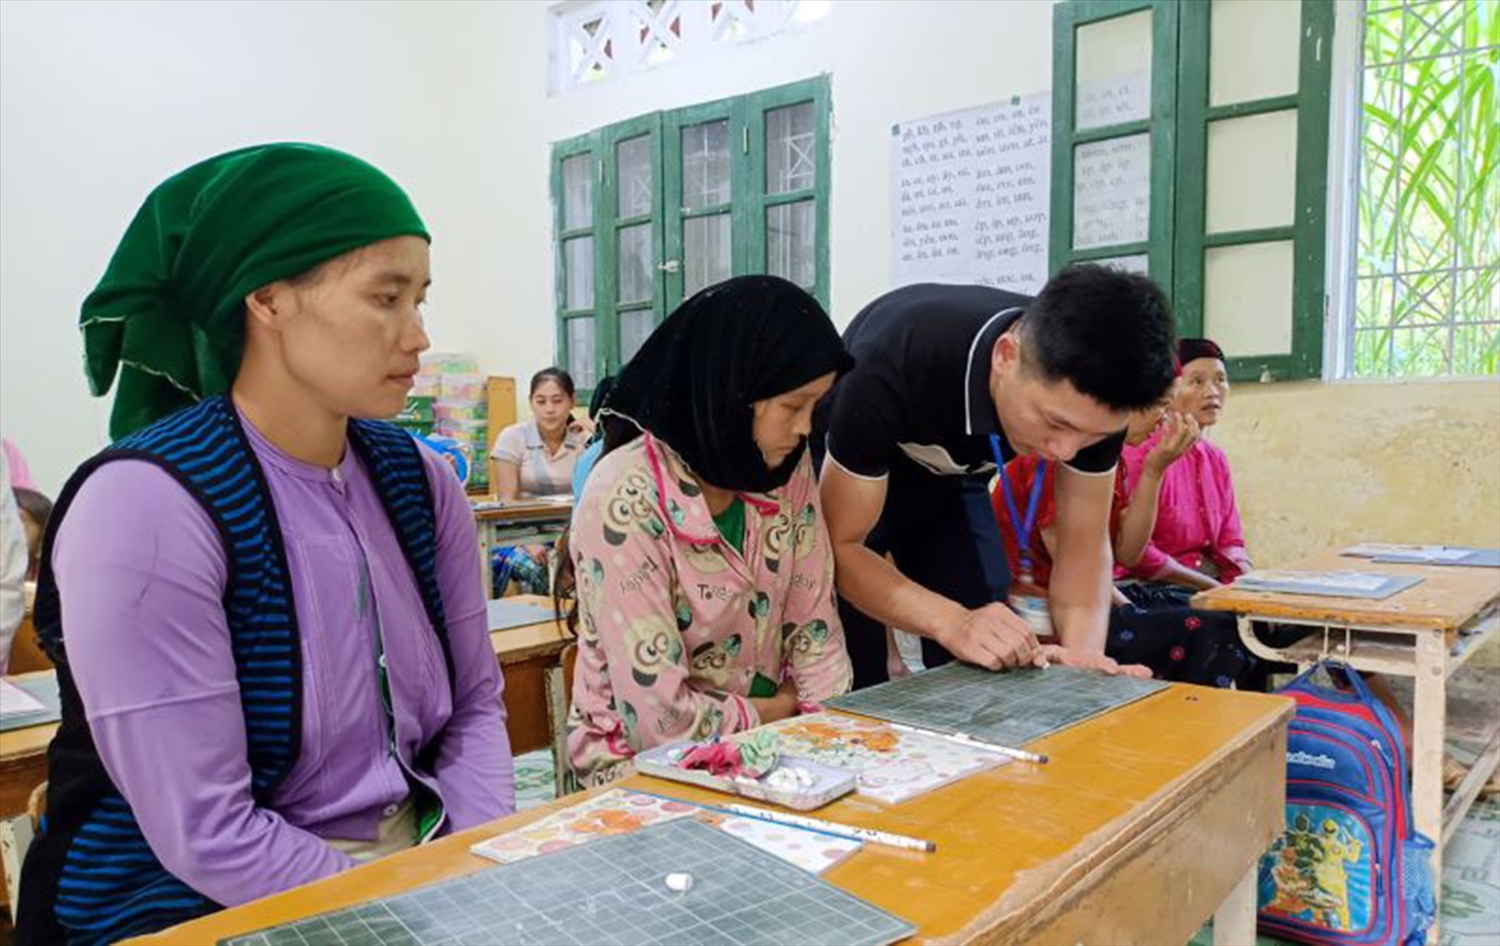  Lớp học xoá mù chữ cho đồng bào DTTS tại xã Lũng Chinh, huyện Mèo Vạc